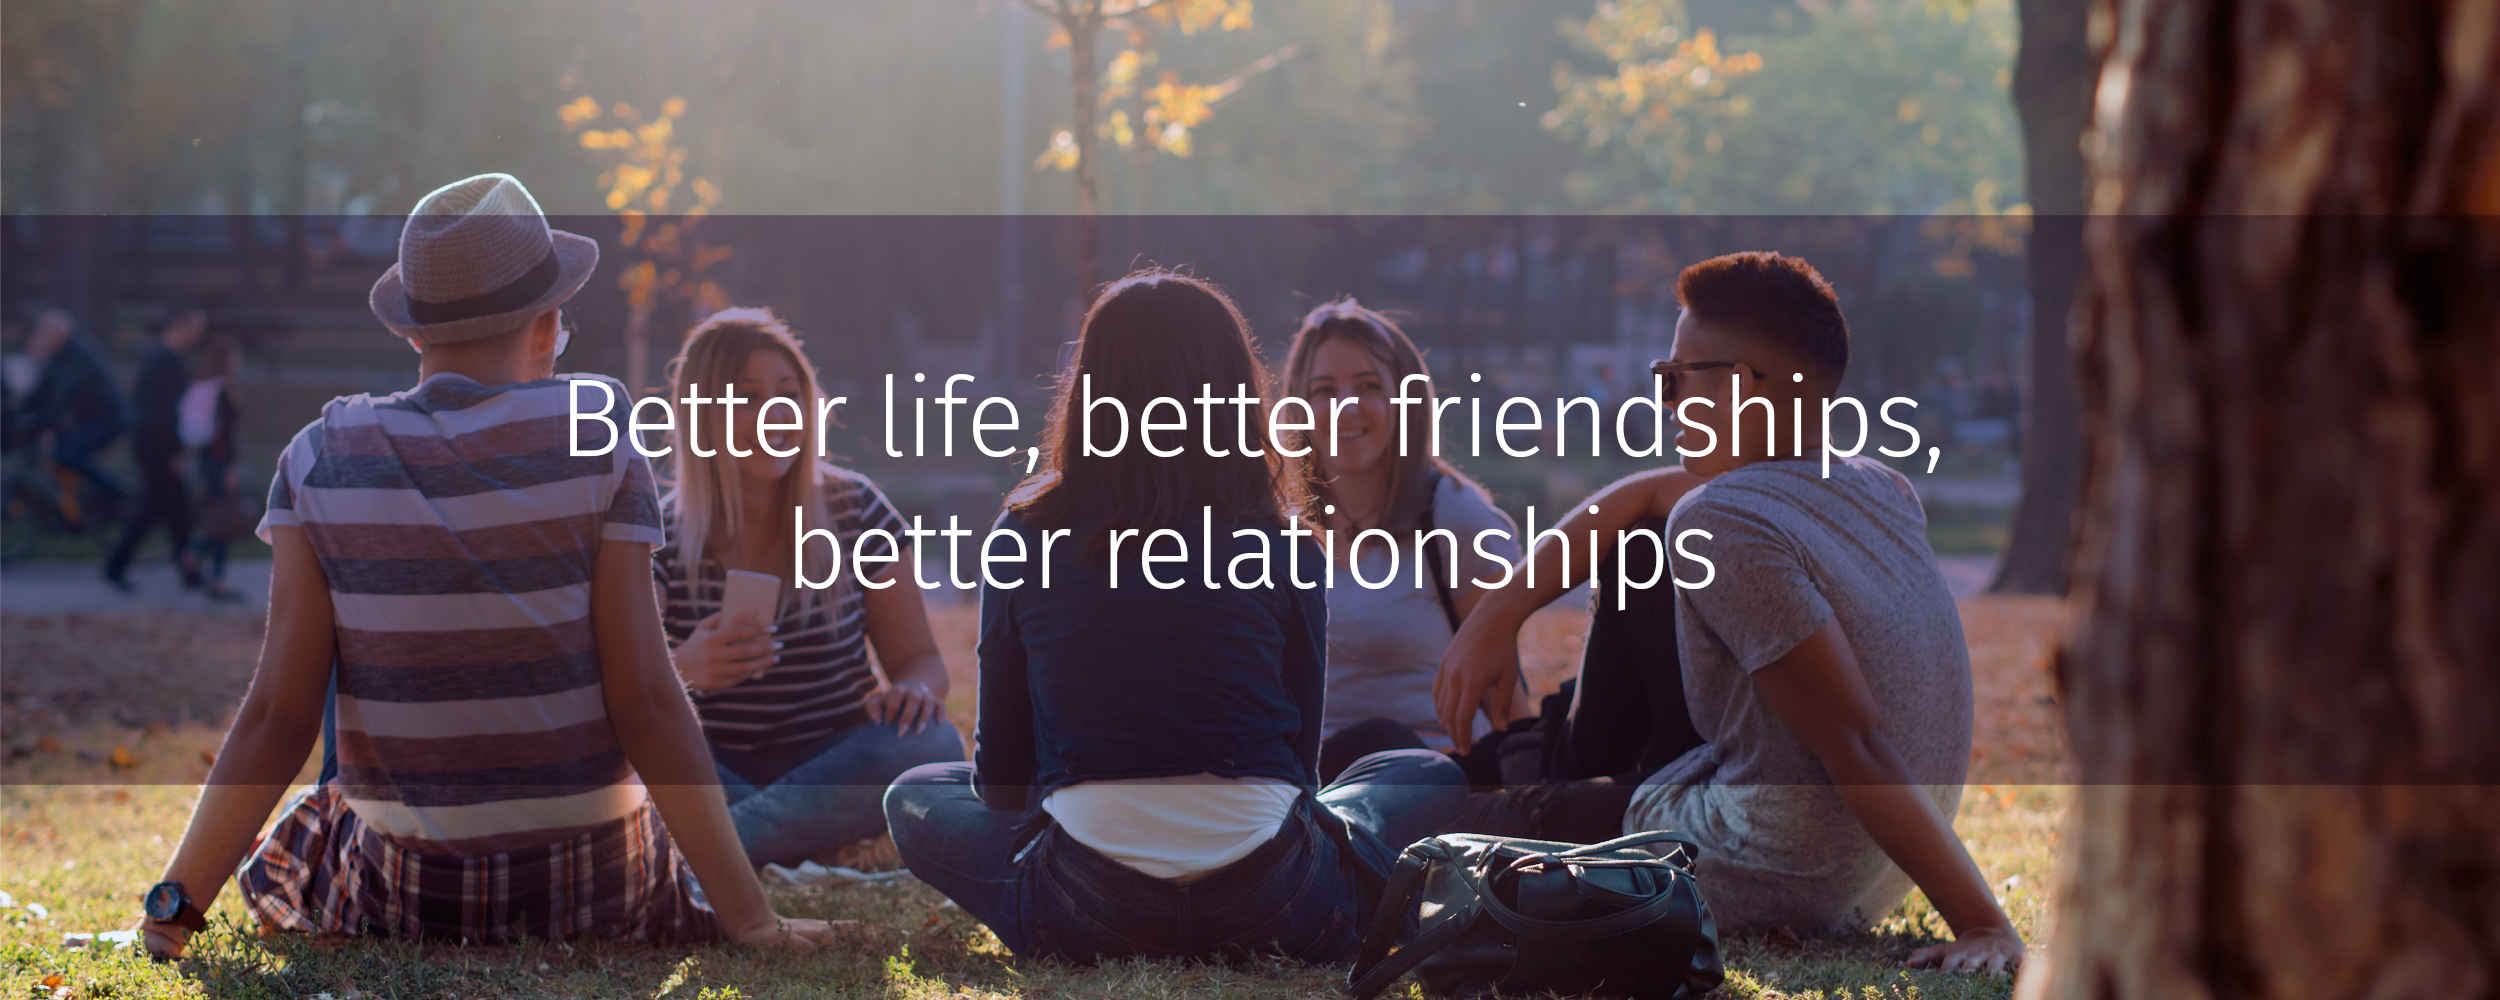 Better life, better friendships, better relationships